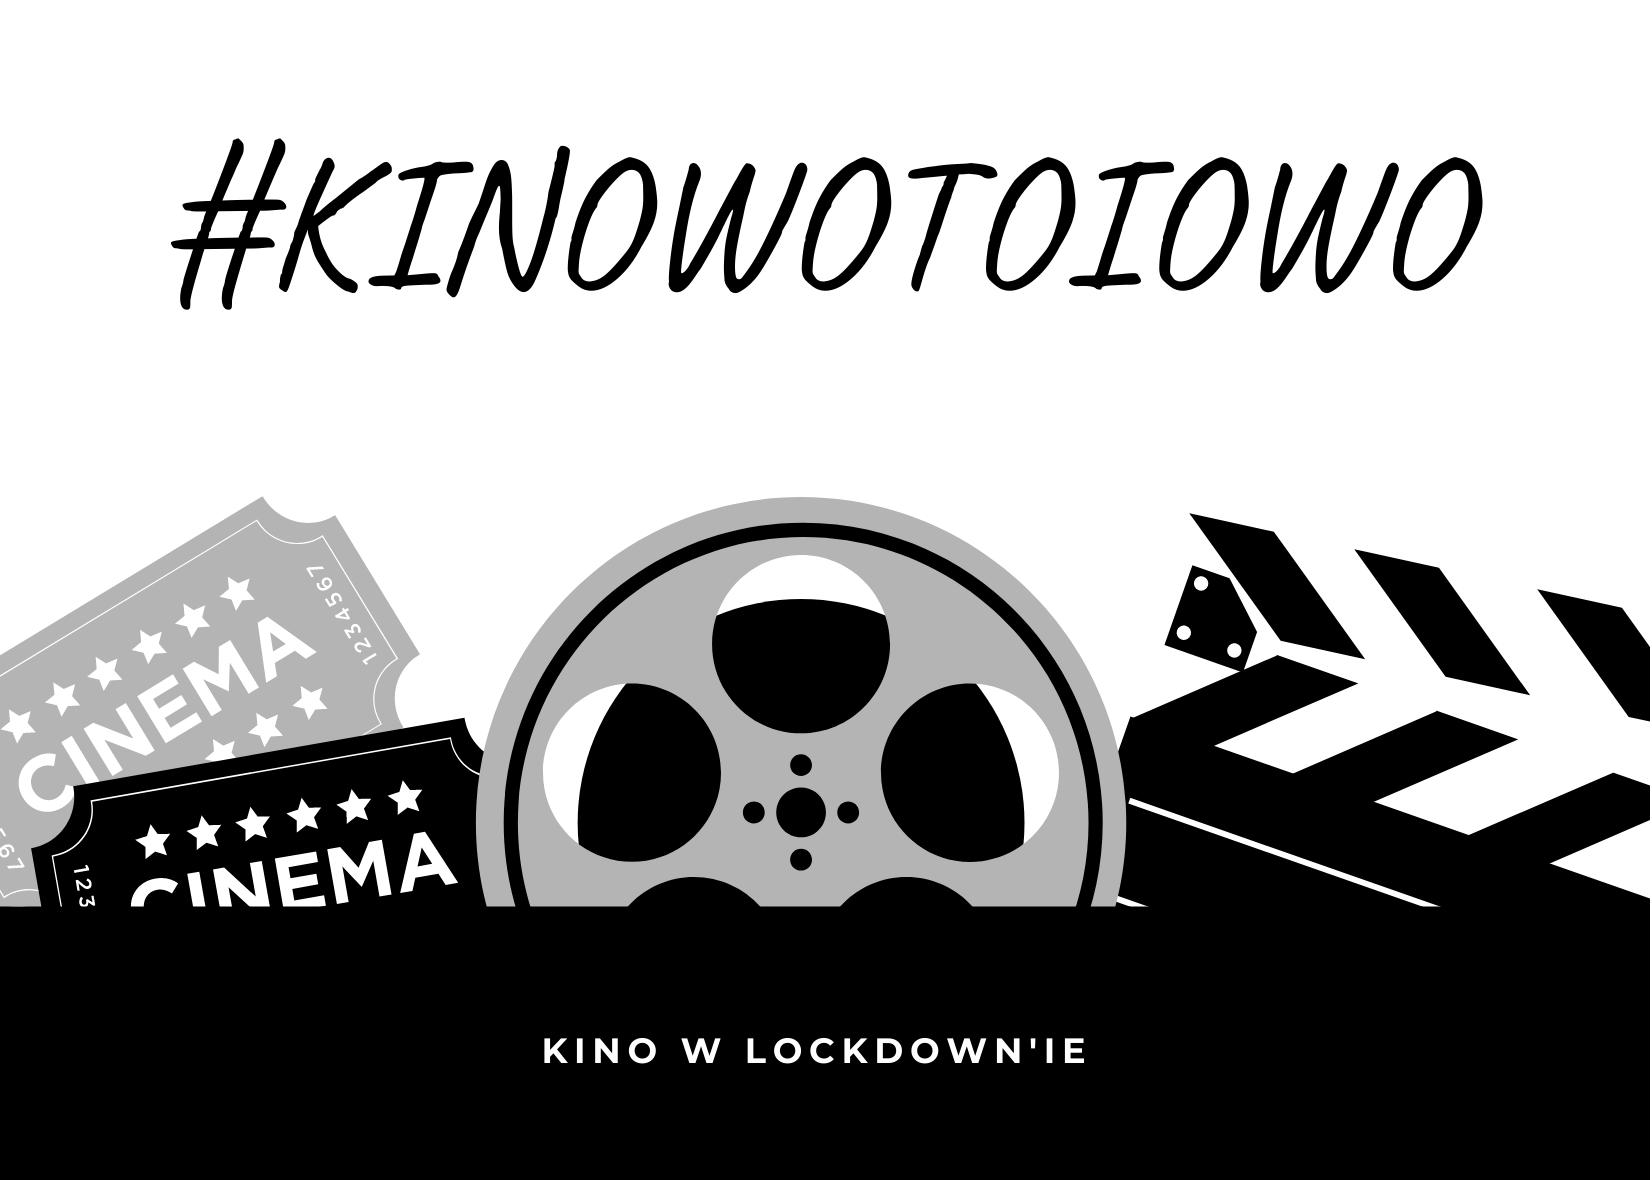 Nie taki on-line straszny #kinowotoiowo /Theremin w filmie